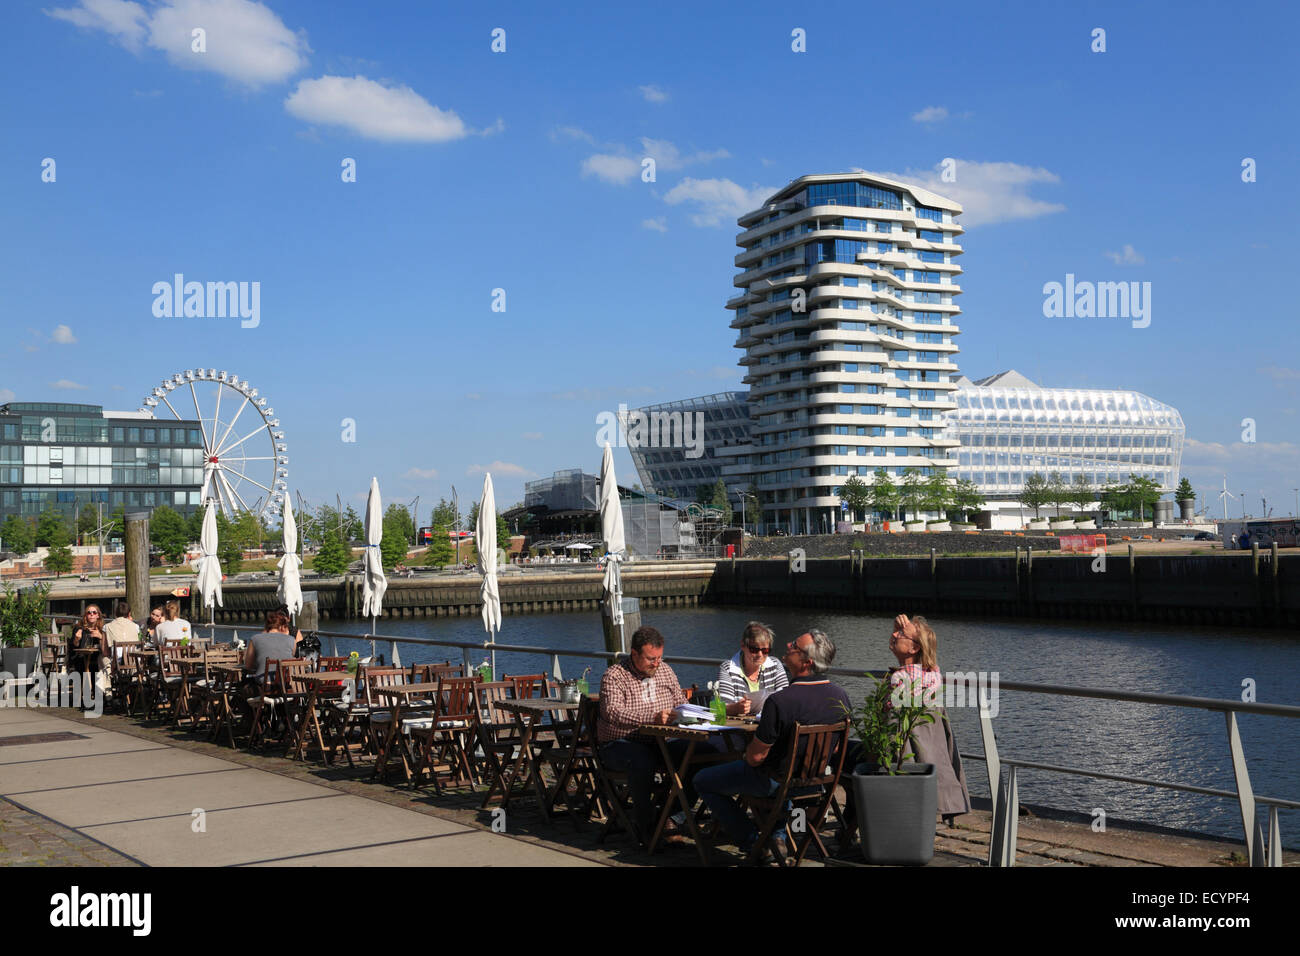 Cafe am Dalmannkai, mit Blick auf Marco Polo Tower und Unilever Gebäude, Hafencity, Hamburg, Deutschland, Europa Stockfoto